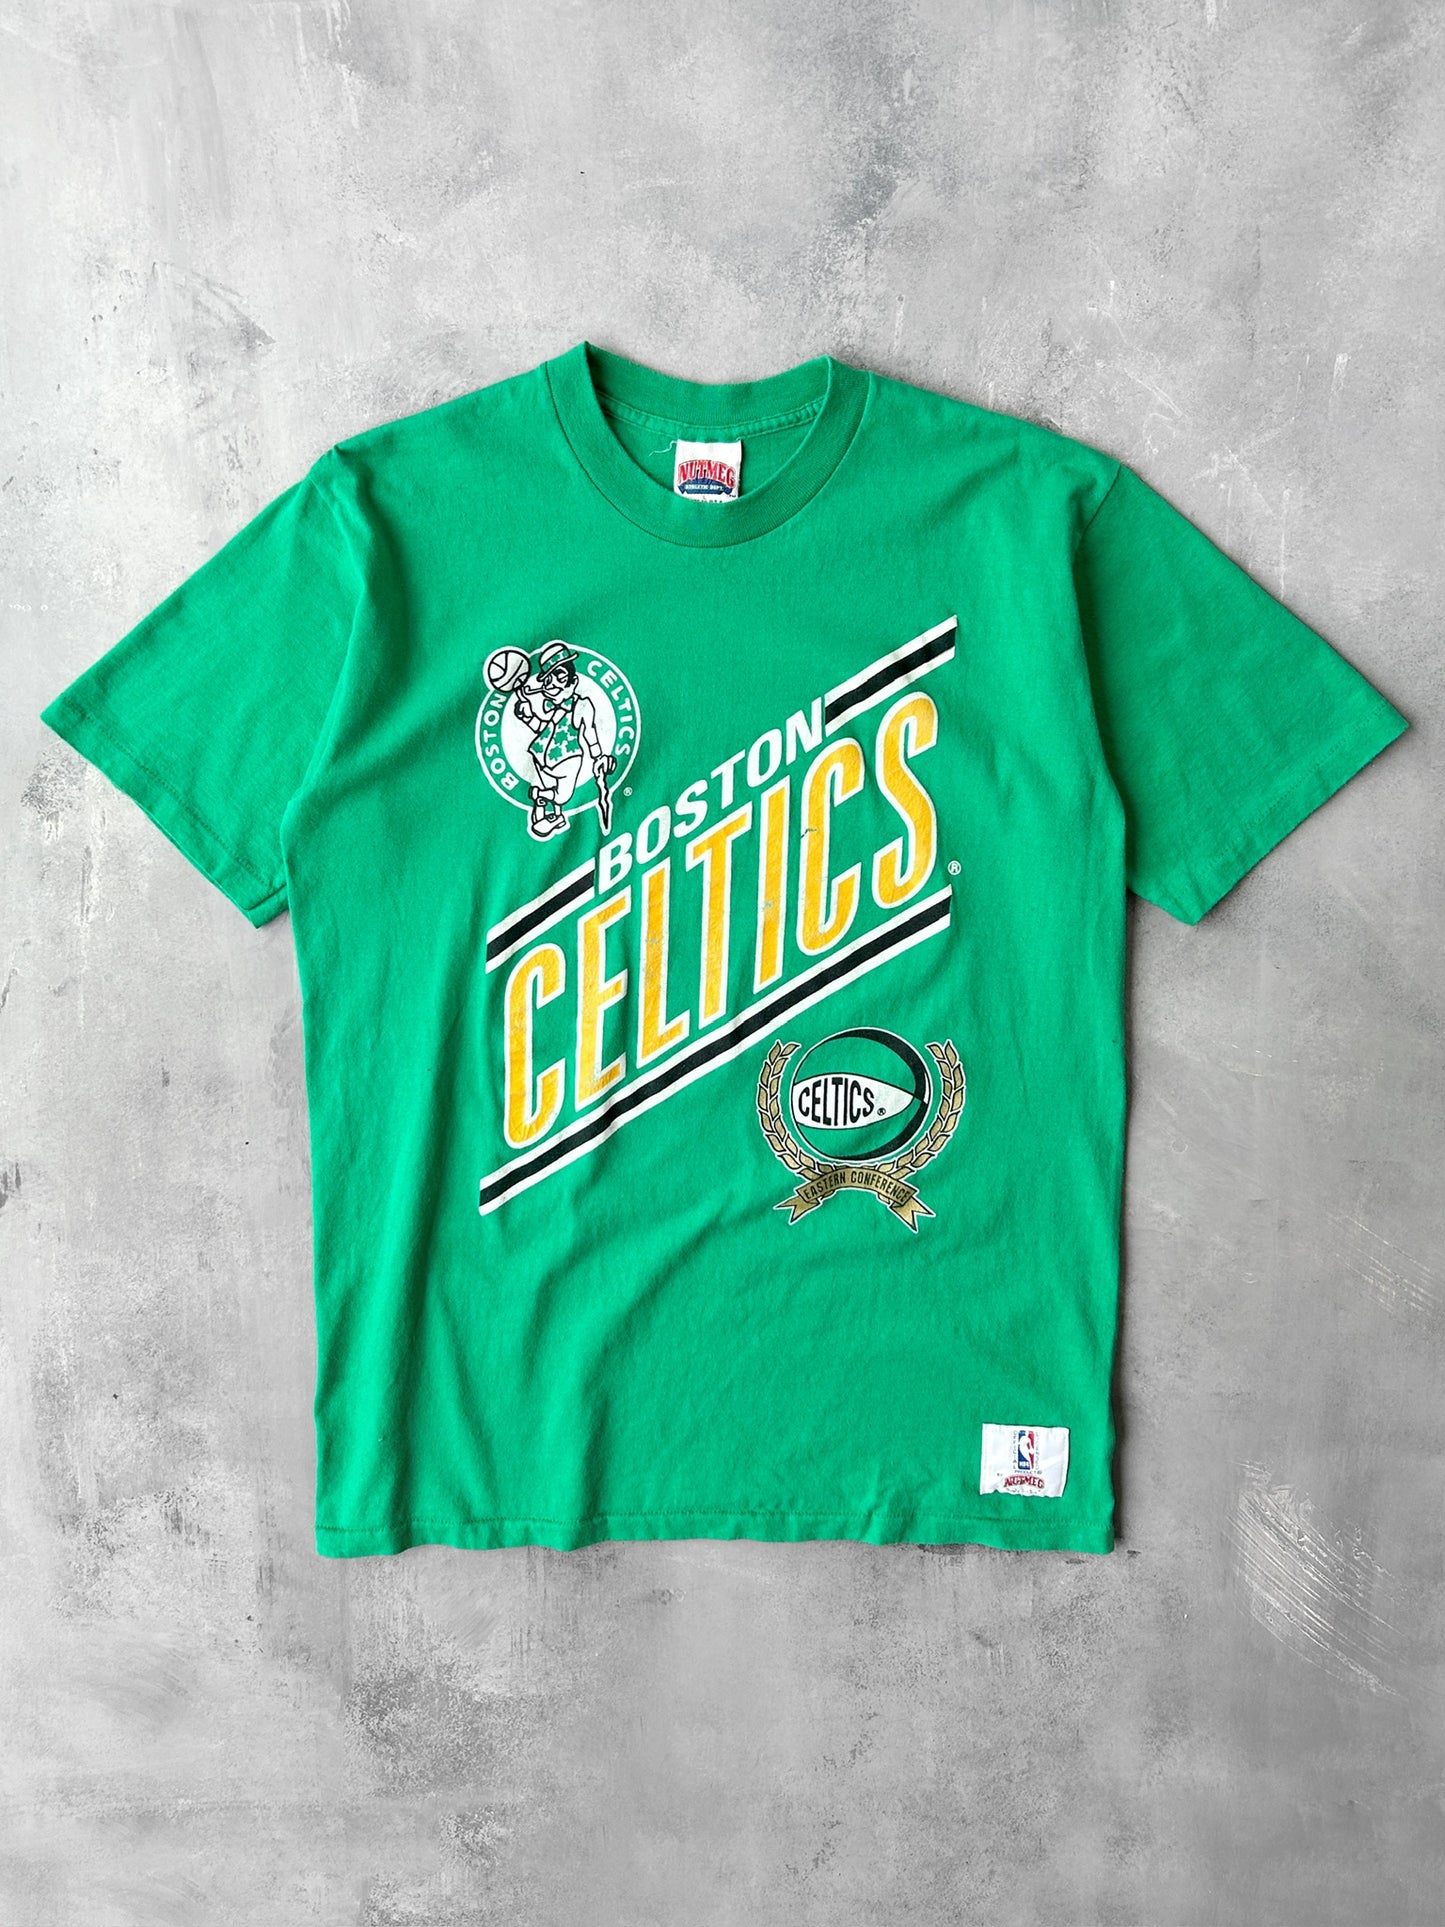 Boston Celtics T-Shirt 90's - Large